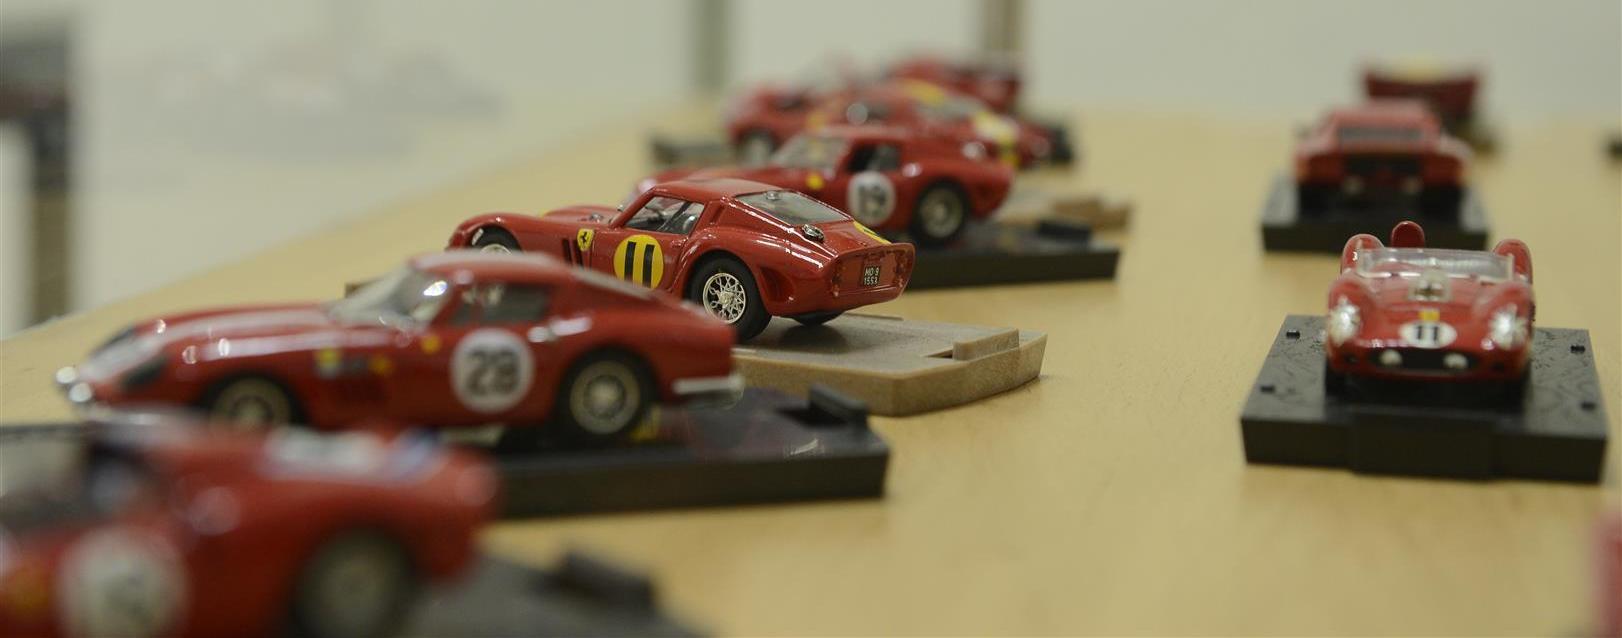 Coleção Ferrari no Ateneu Popular